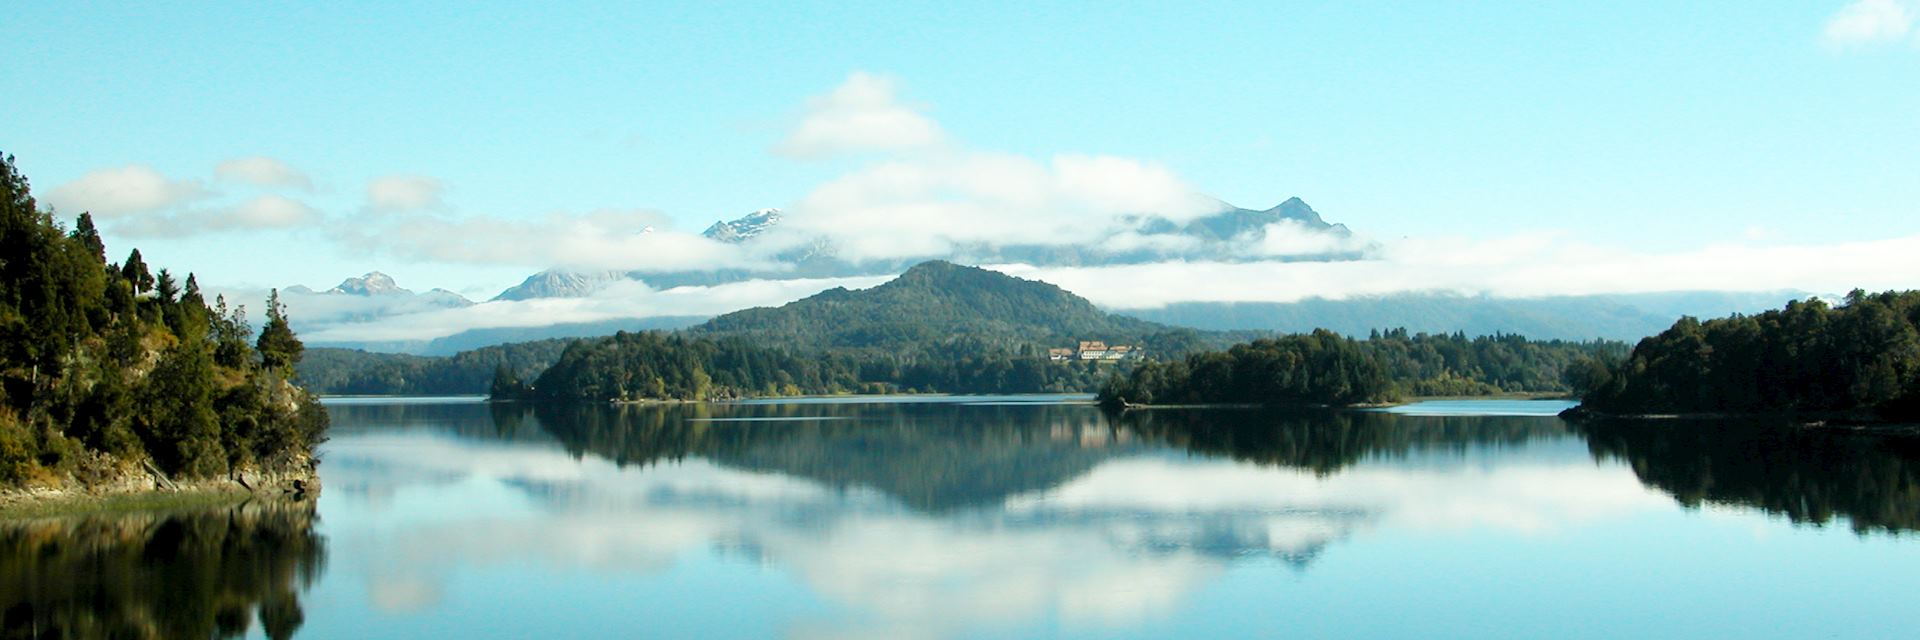 Nahuel Huapi Lake, Argentina